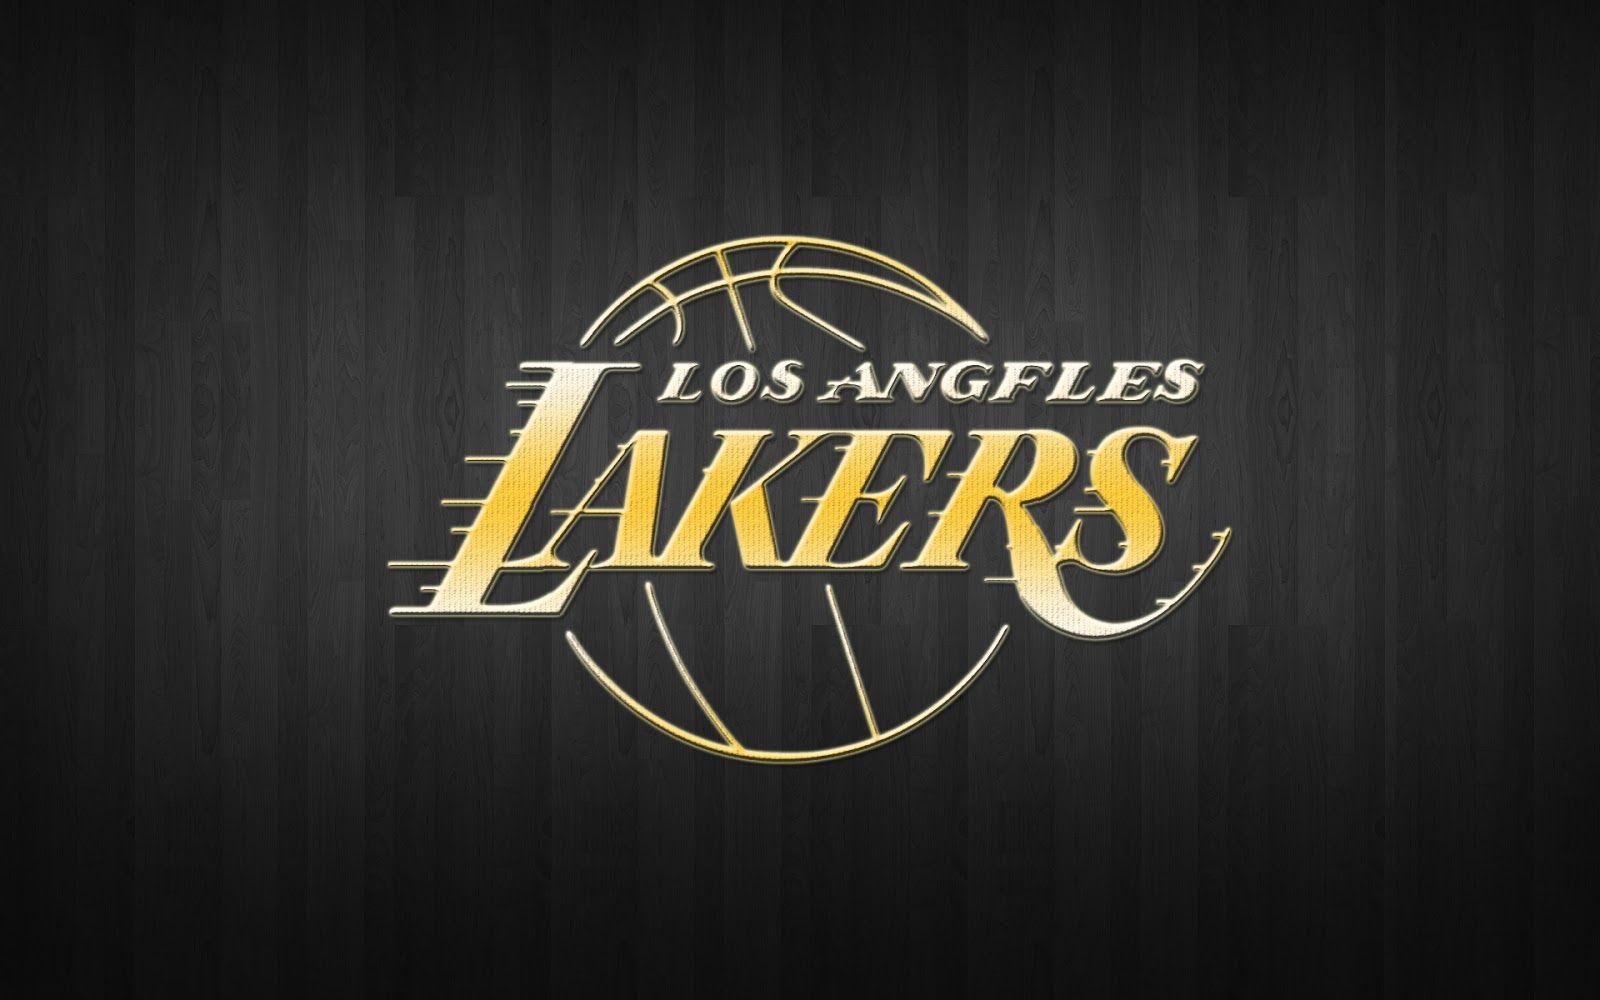 Wallpaper La Lakers. Free Download Wallpaper